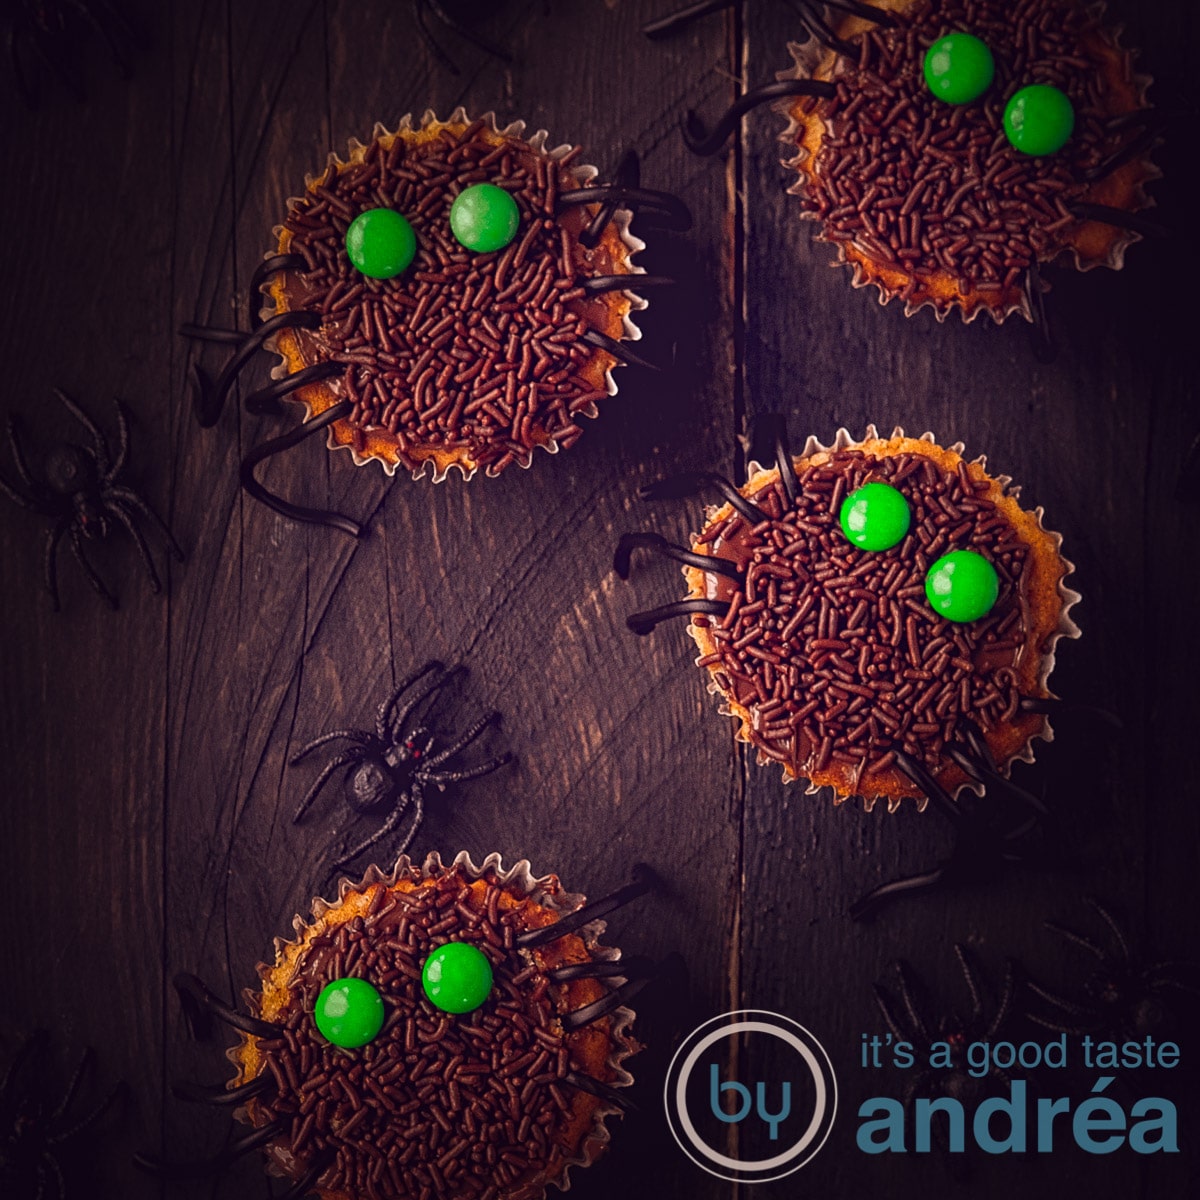 Een vierkante foto met 2 hele en 2 halve cupcakes die versierd zijn als spin